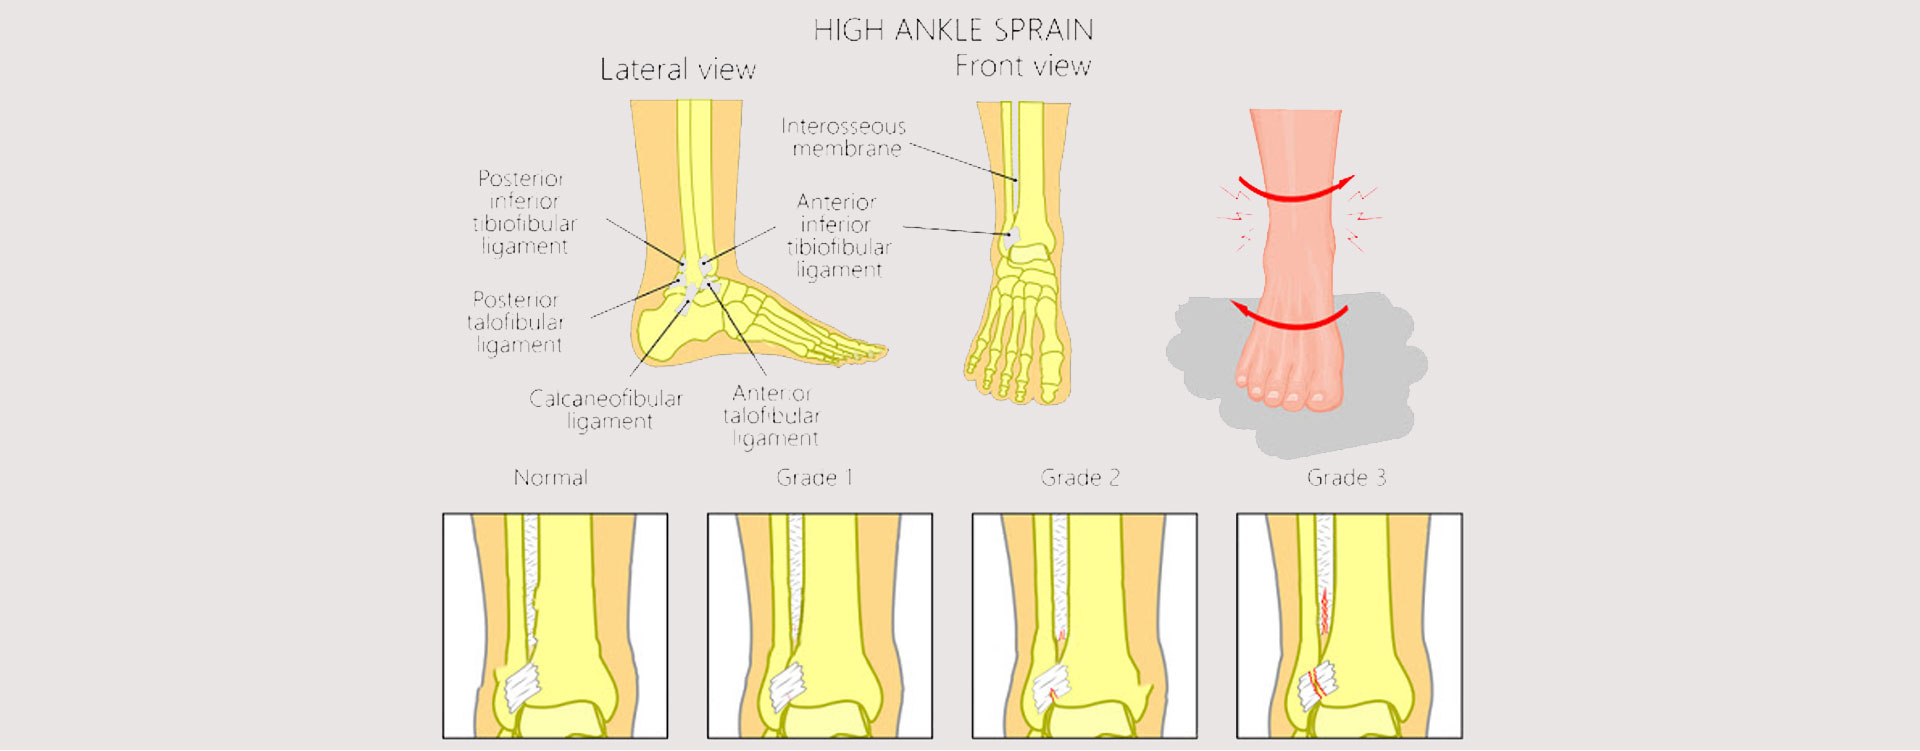 high-ankle-sprain